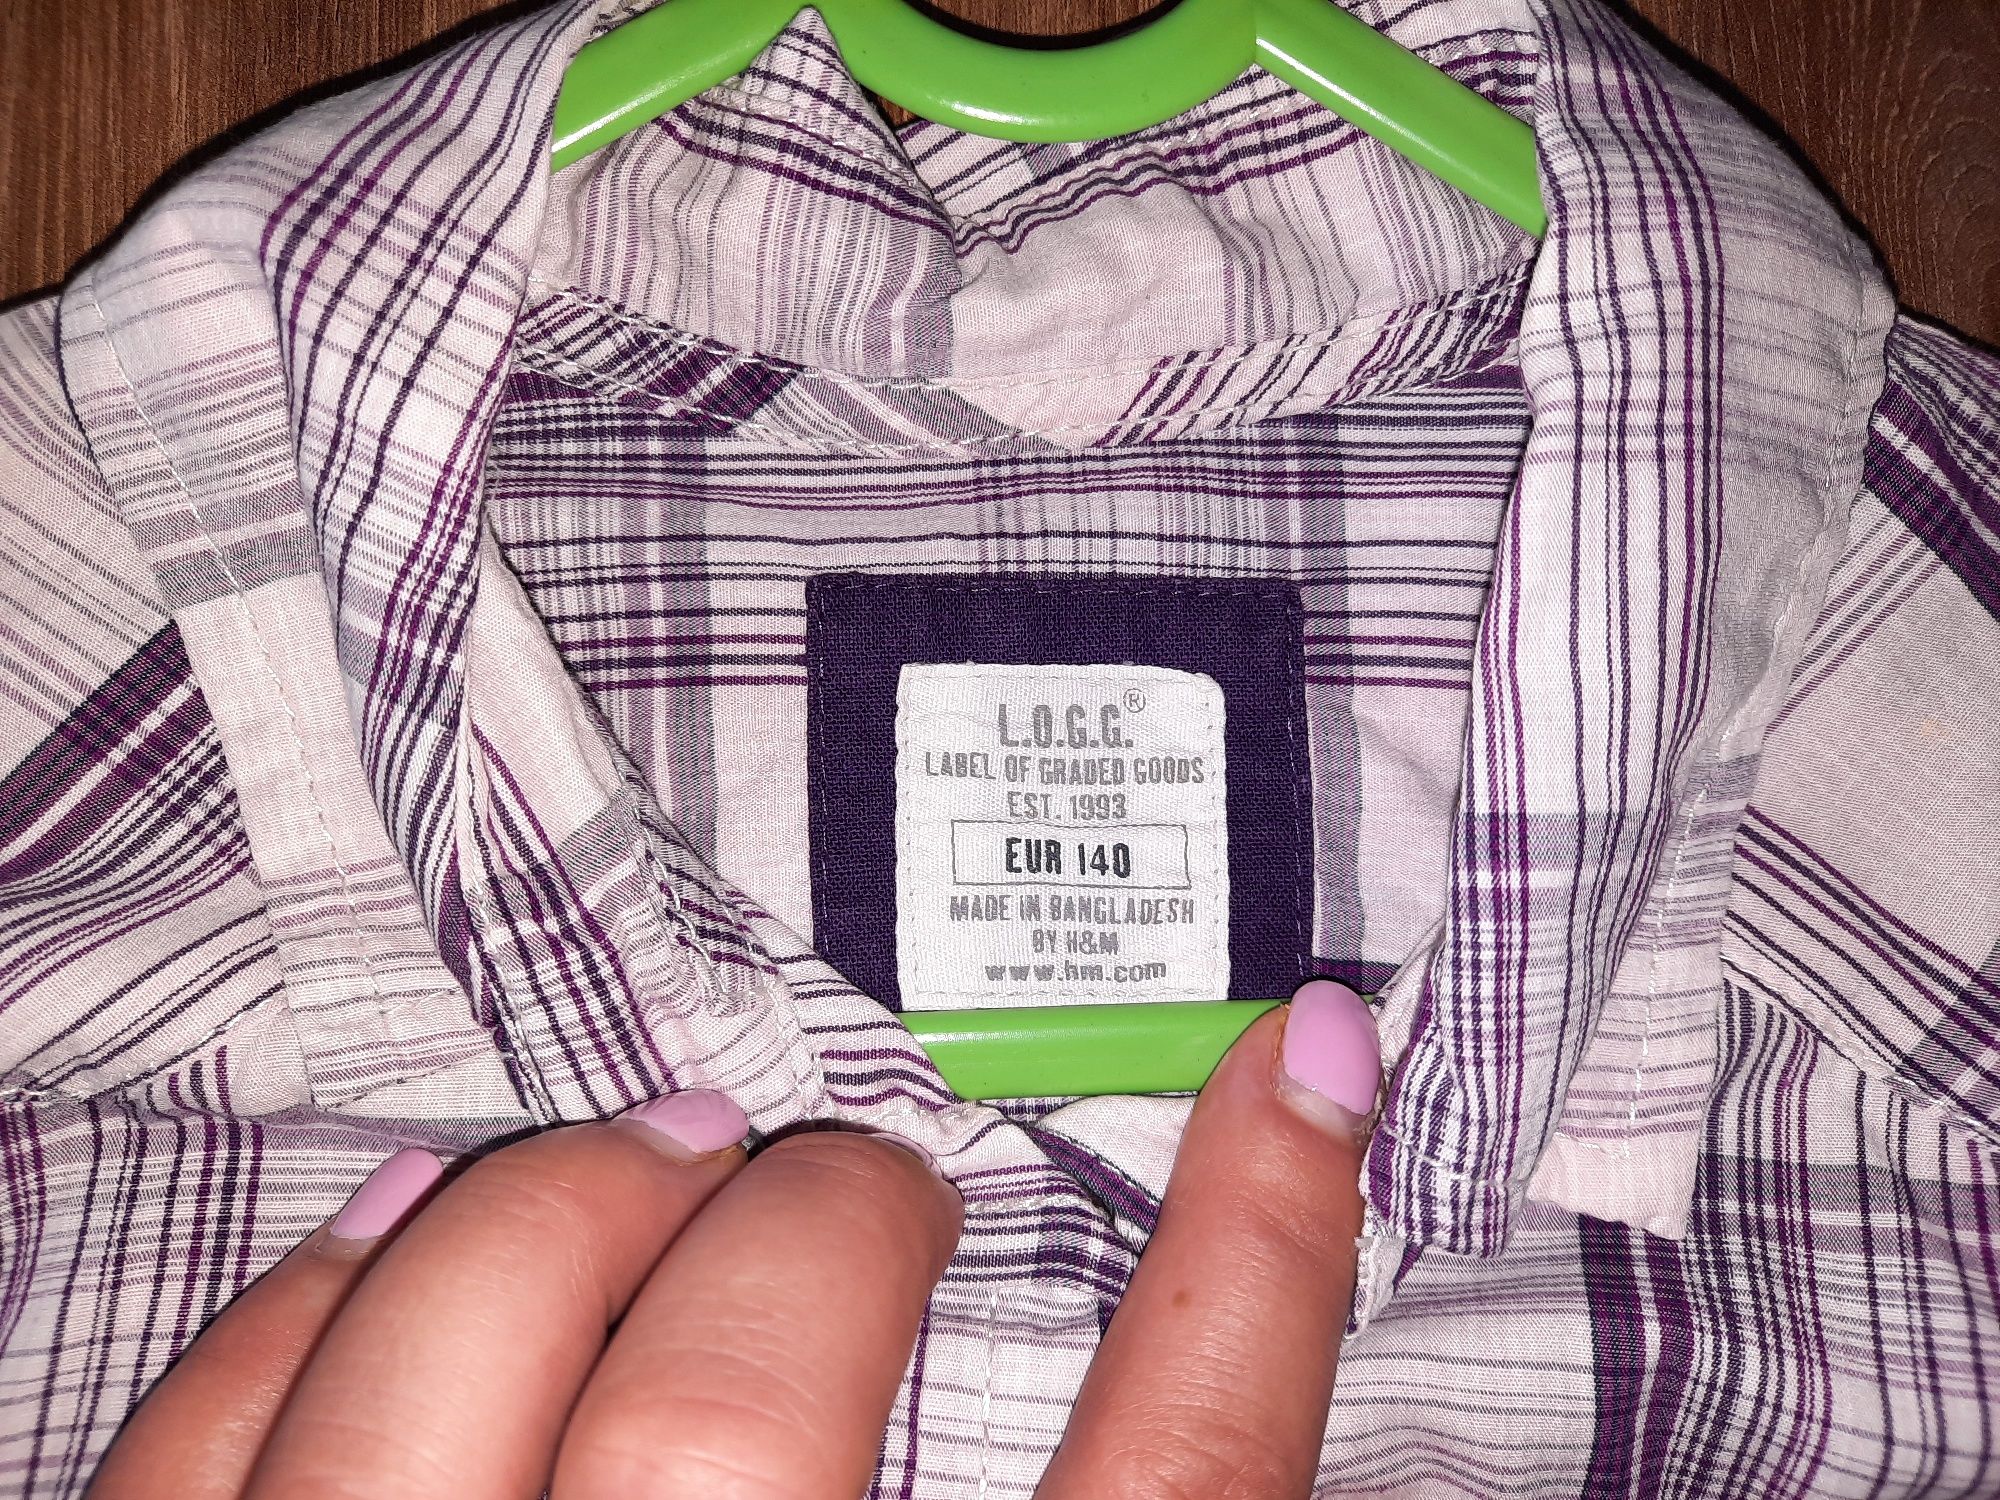 Koszula/ bluzka dla dziewczynki, firma H&M, rozmiar 140